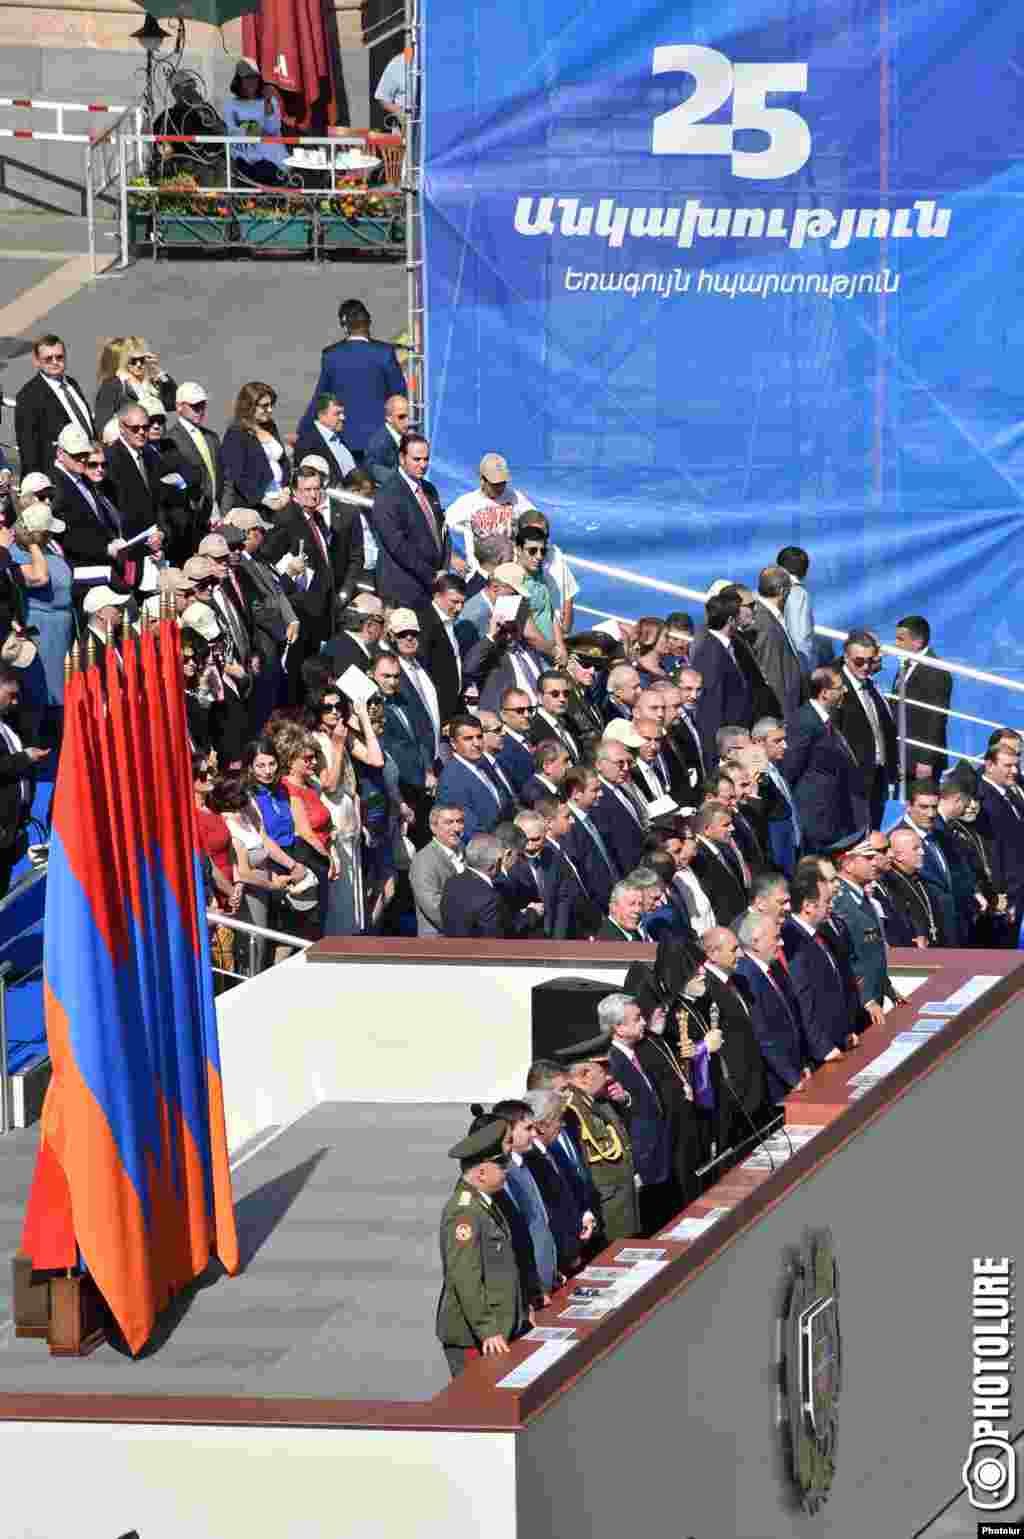 Арменияның саяси билік басшылары мен әскери жетекшілері ел тәуелсіздігінің 25 жылдығына орай Ереванда өтіп жатқан әскери парадта тұр. 21 қыркүйек 2016 жыл.